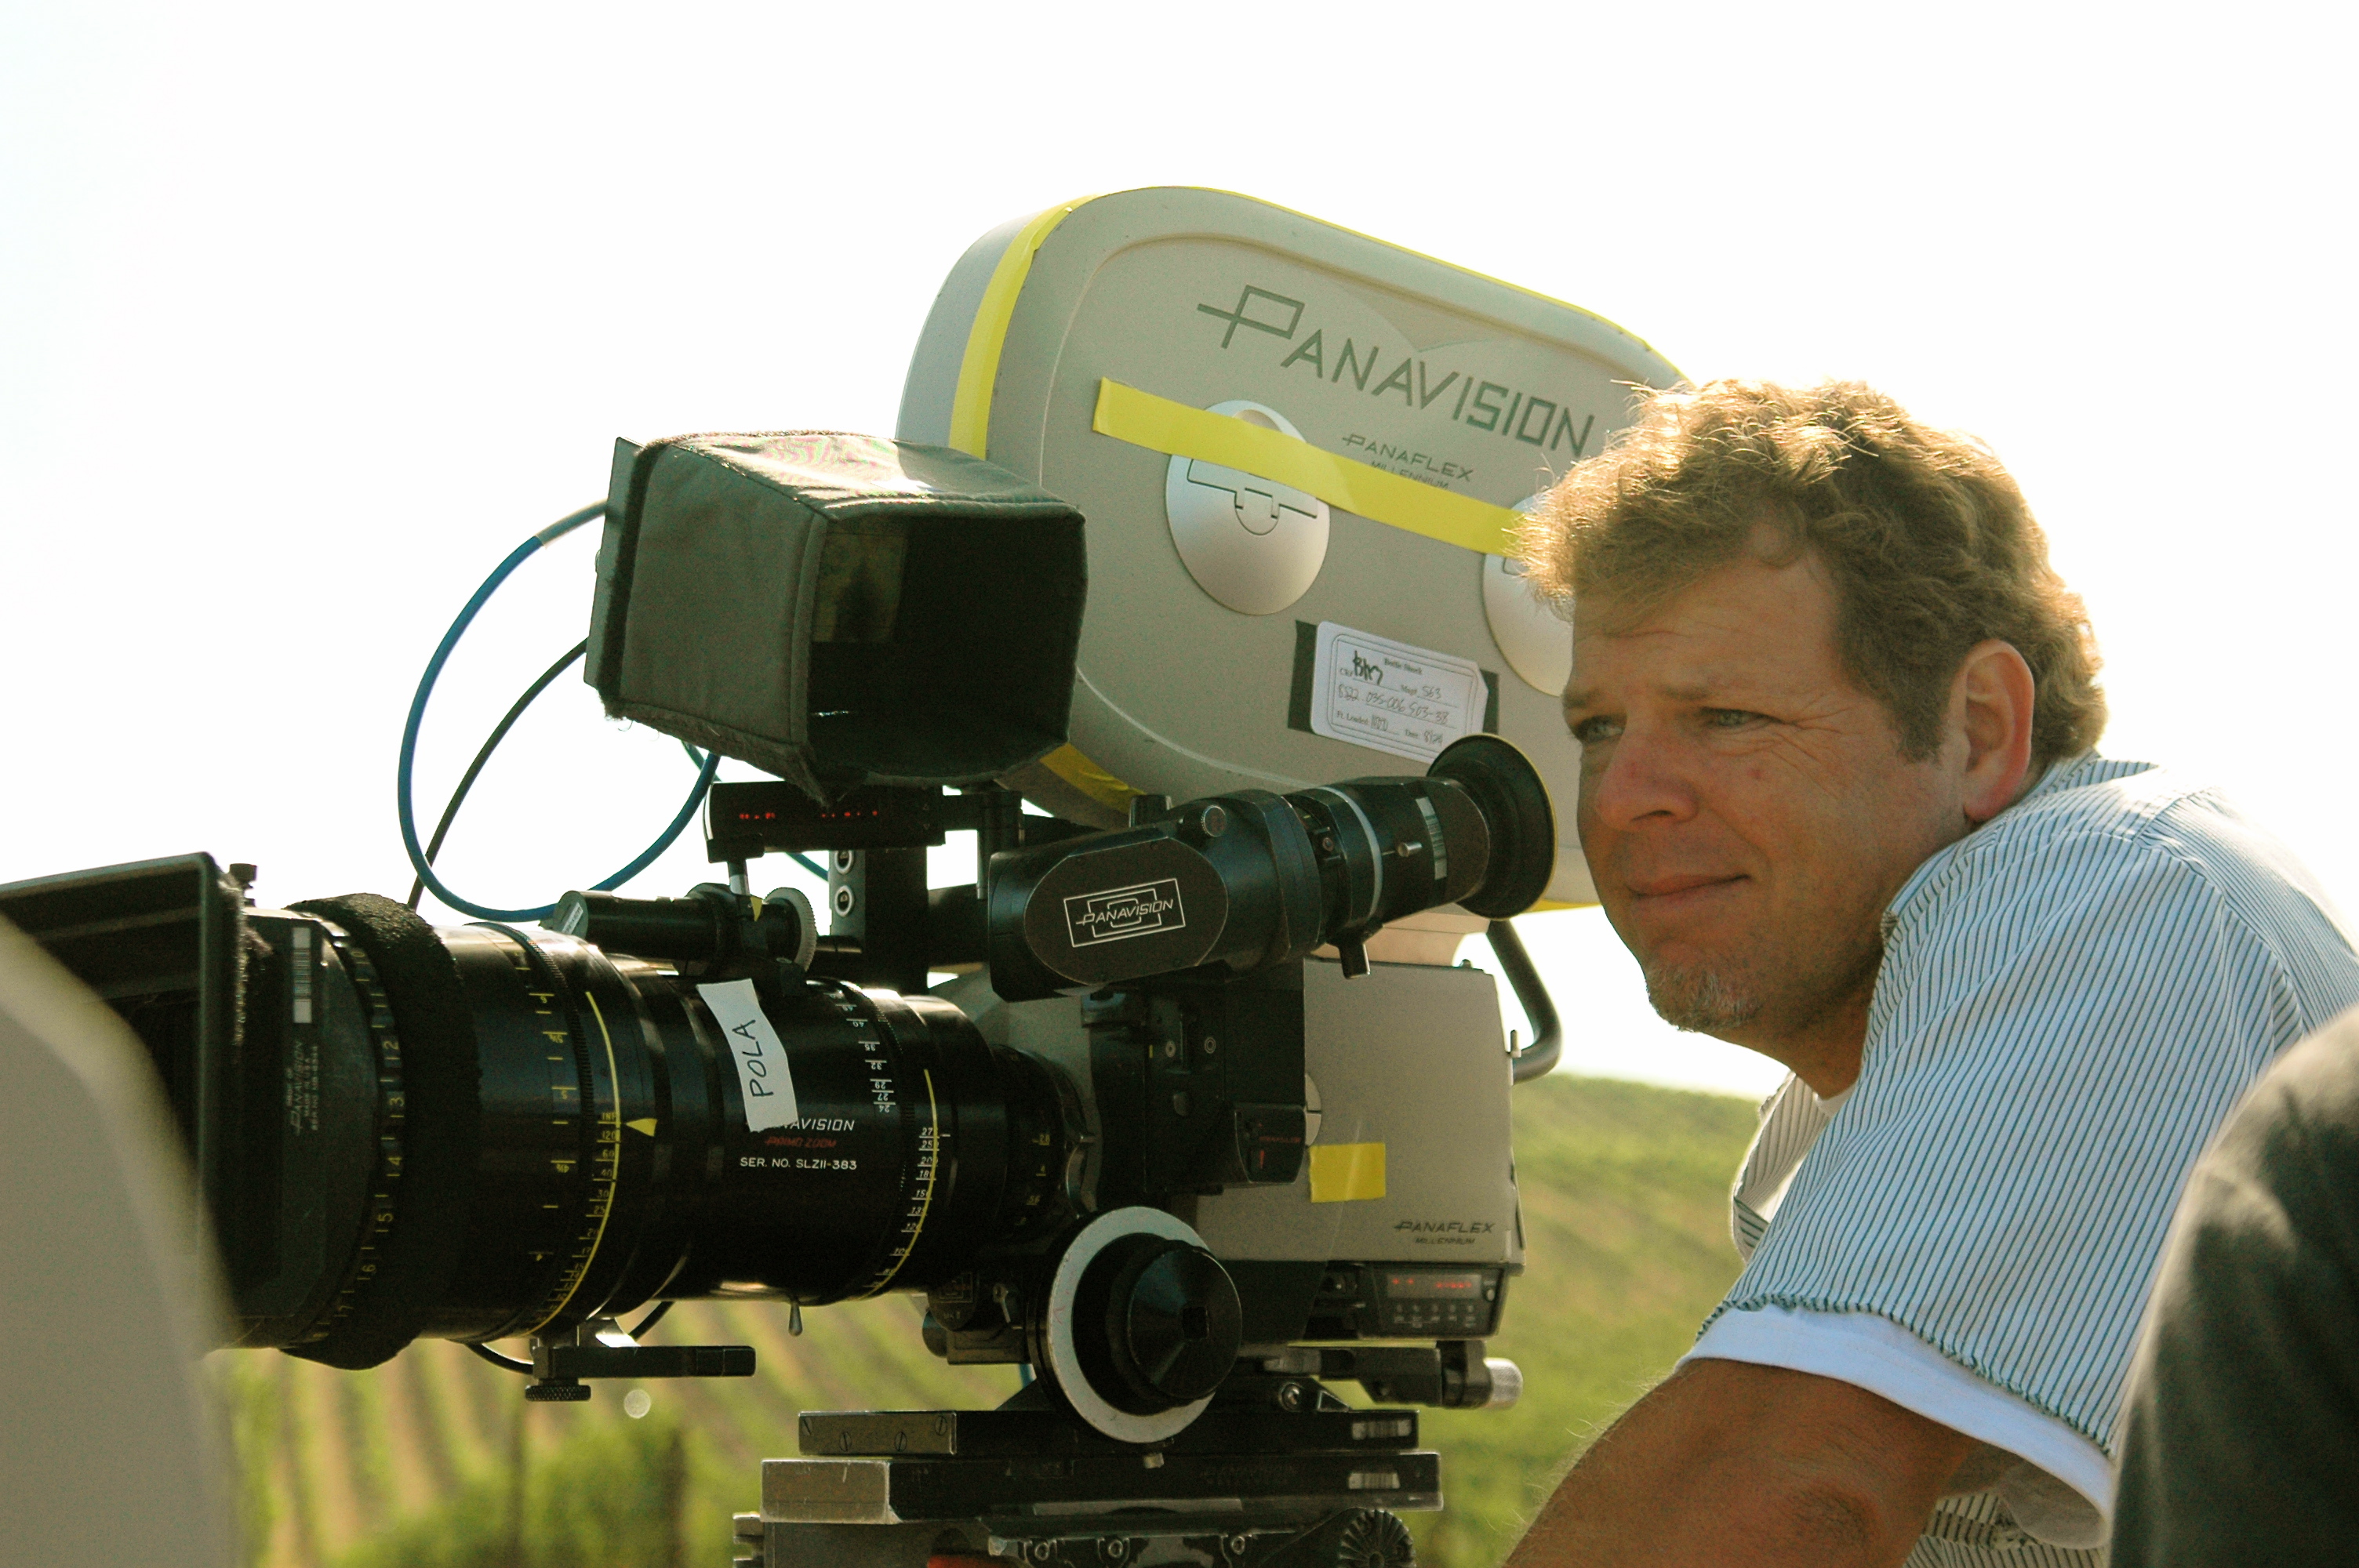 Director of Photography Tim Bellen